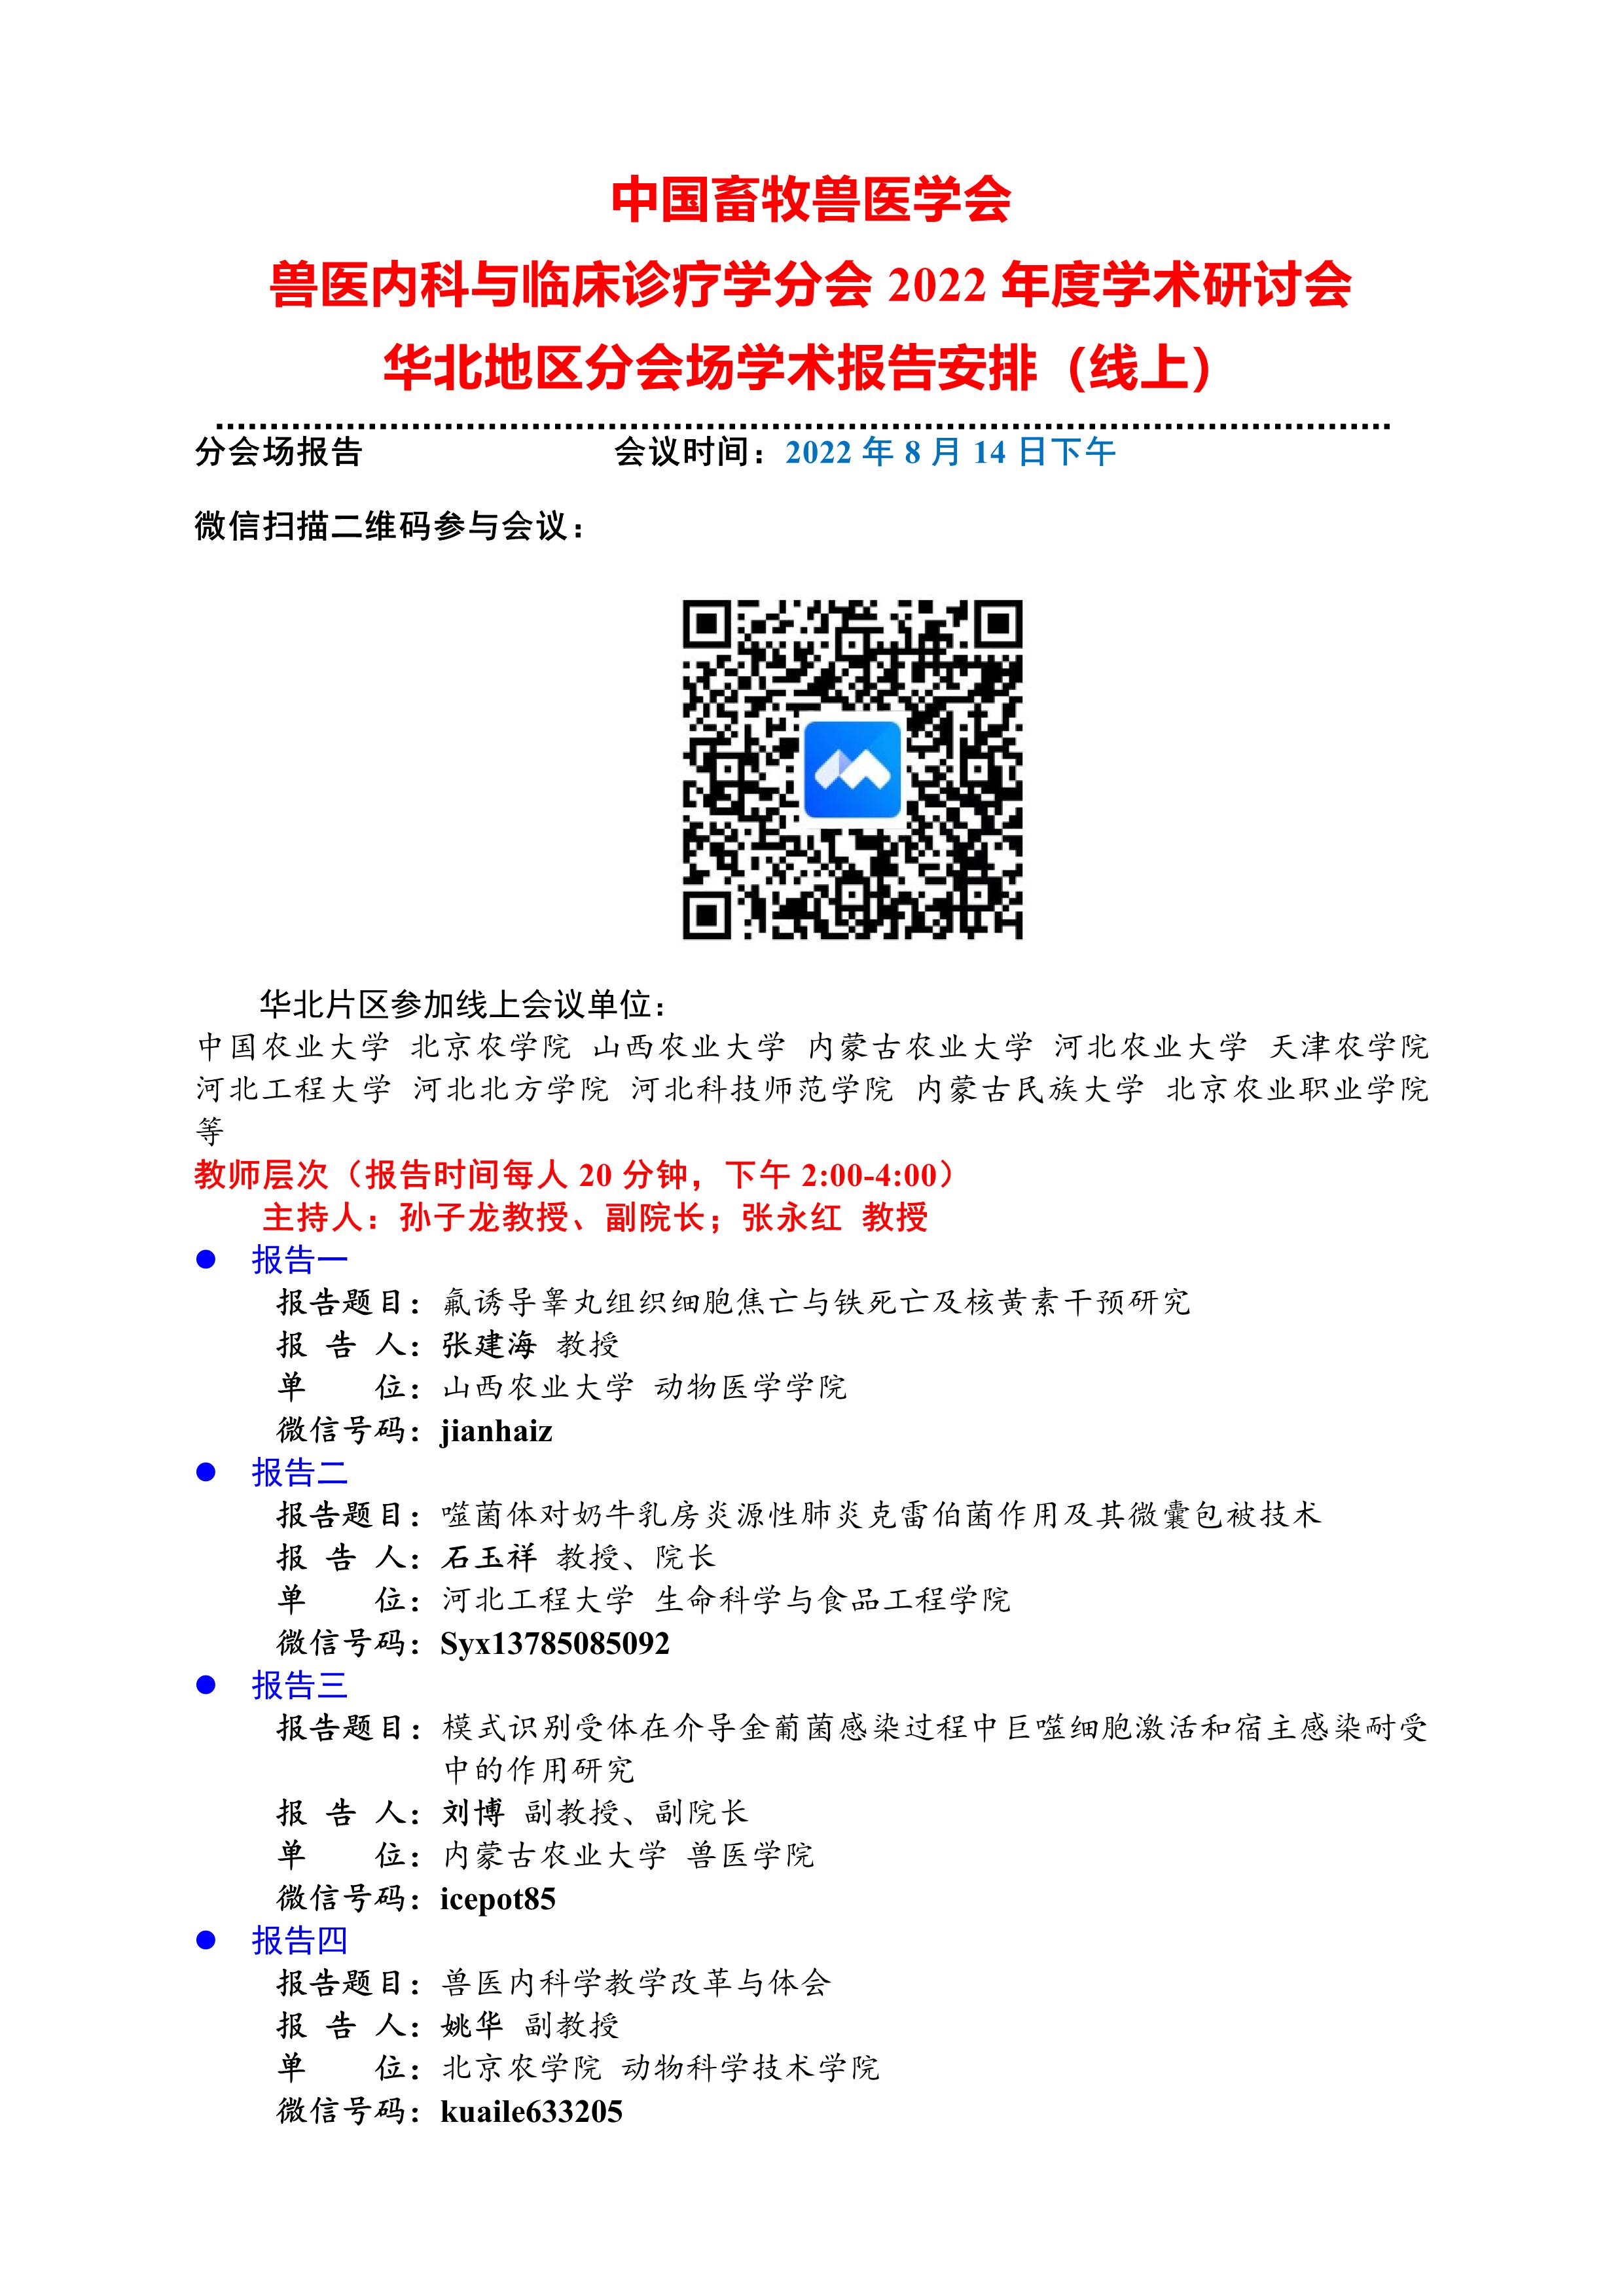 华北地区线上会议学术报告安排2022-08-08 R3(1)_1.jpg